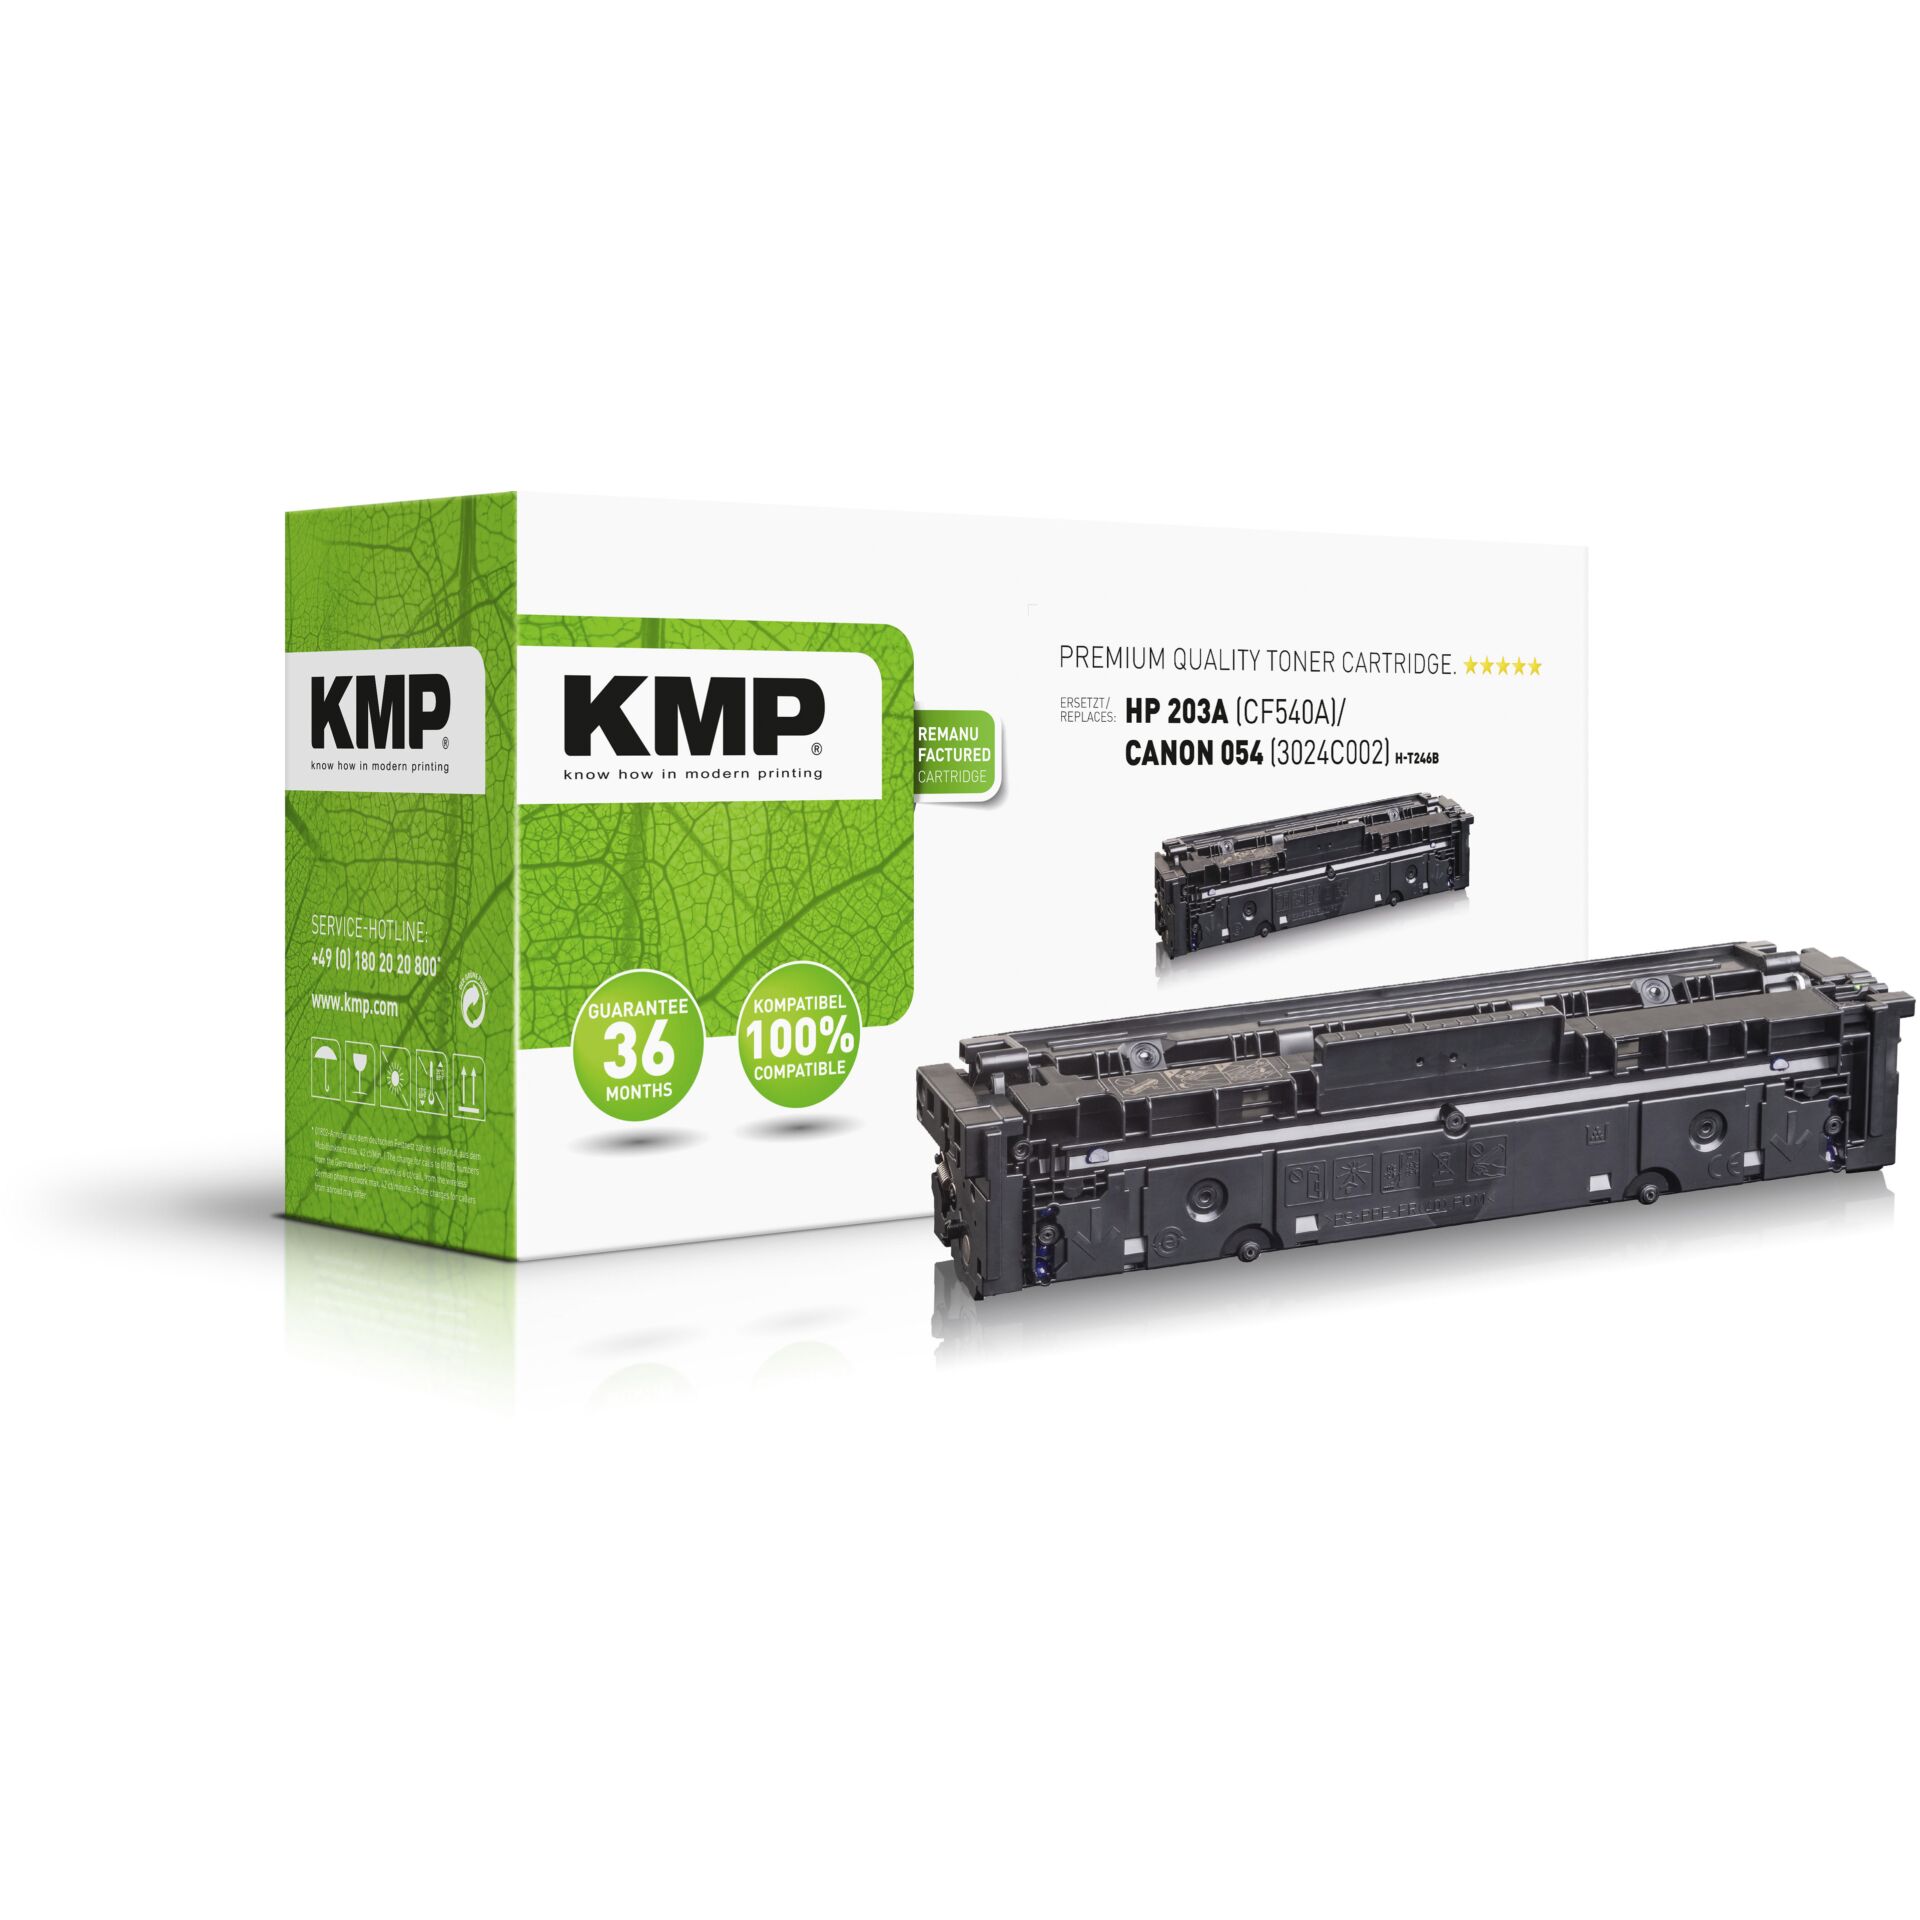 KMP H-T246B Toner schwarz kompatibel mit HP CF 540 A